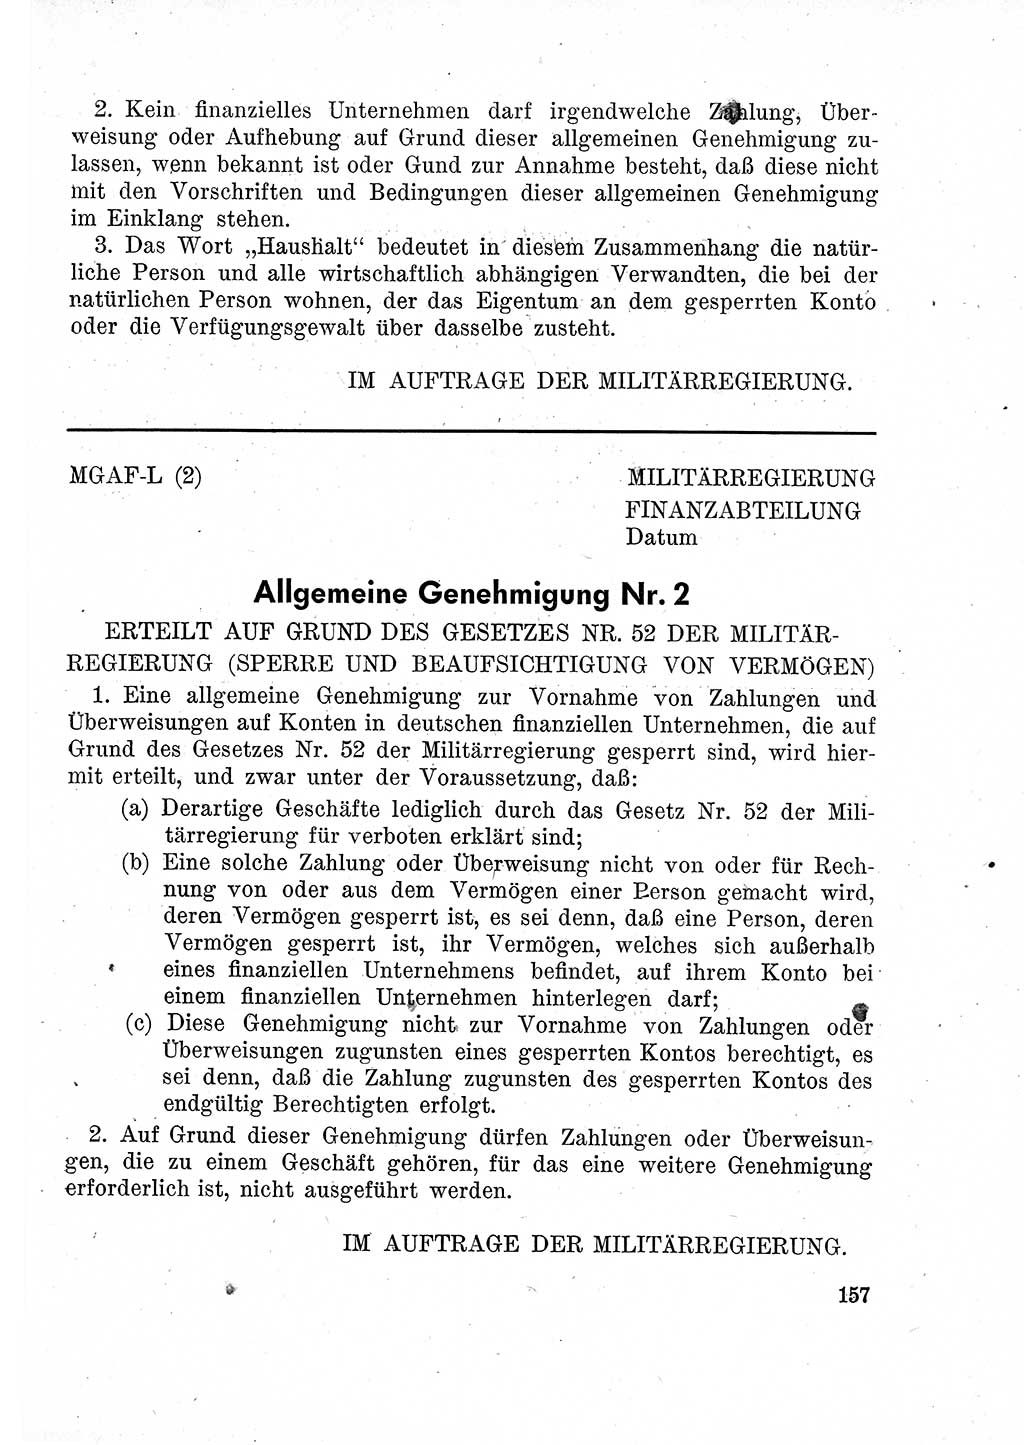 Das Recht der Besatzungsmacht (Deutschland), Proklamationen, Deklerationen, Verordnungen, Gesetze und Bekanntmachungen 1947, Seite 157 (R. Bes. Dtl. 1947, S. 157)